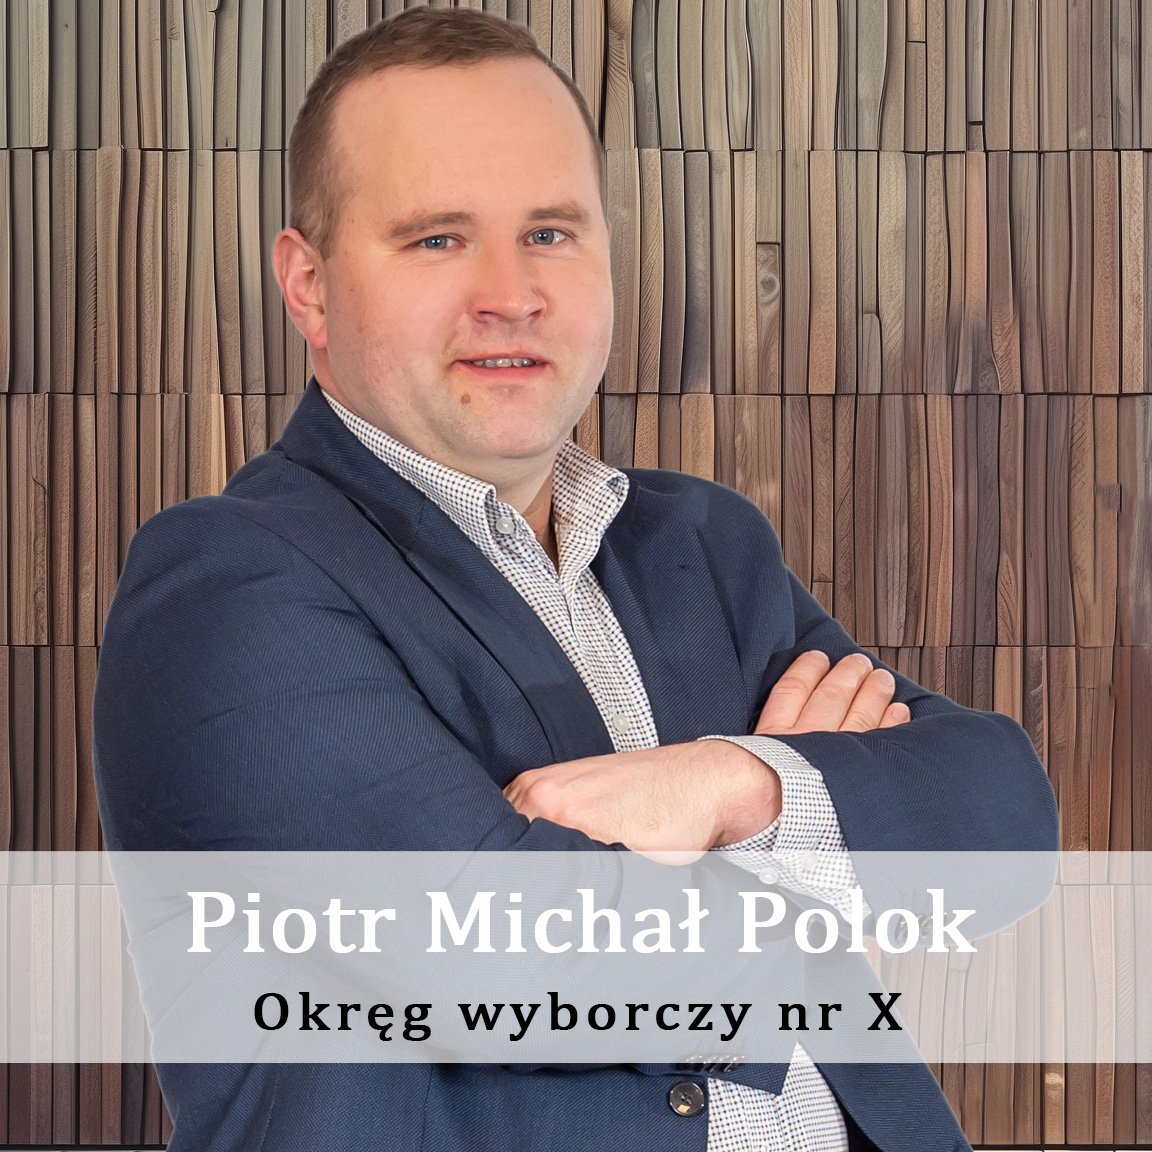 Piotr_Michał_Polok-Okręg-wyporczy-nr-10-Radny-Miasto-Wisła